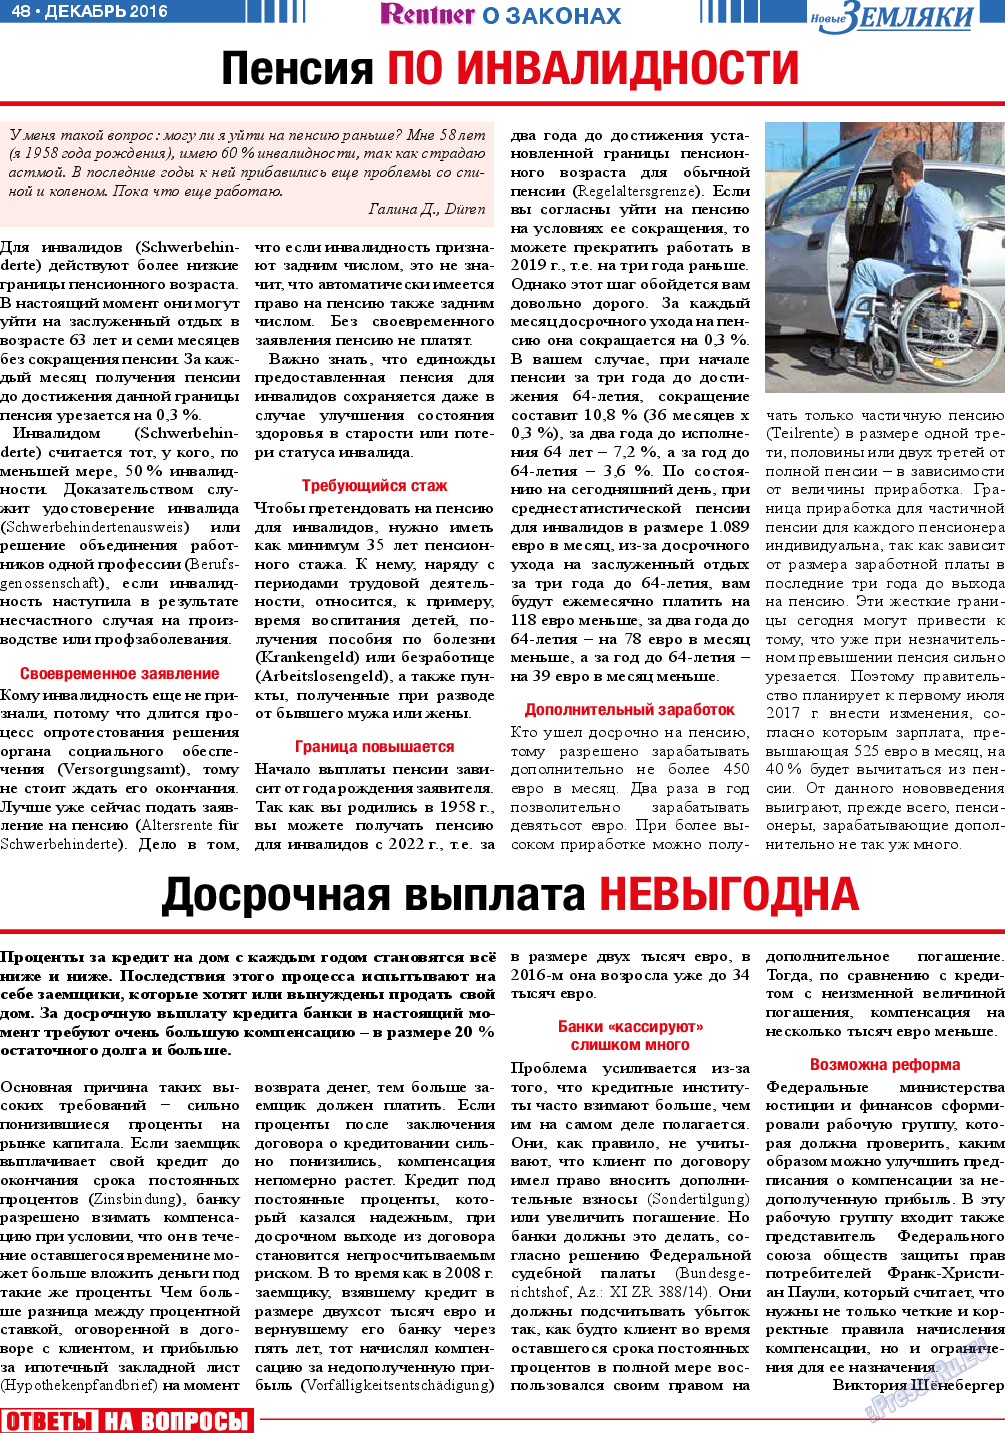 Новые Земляки, газета. 2016 №12 стр.48